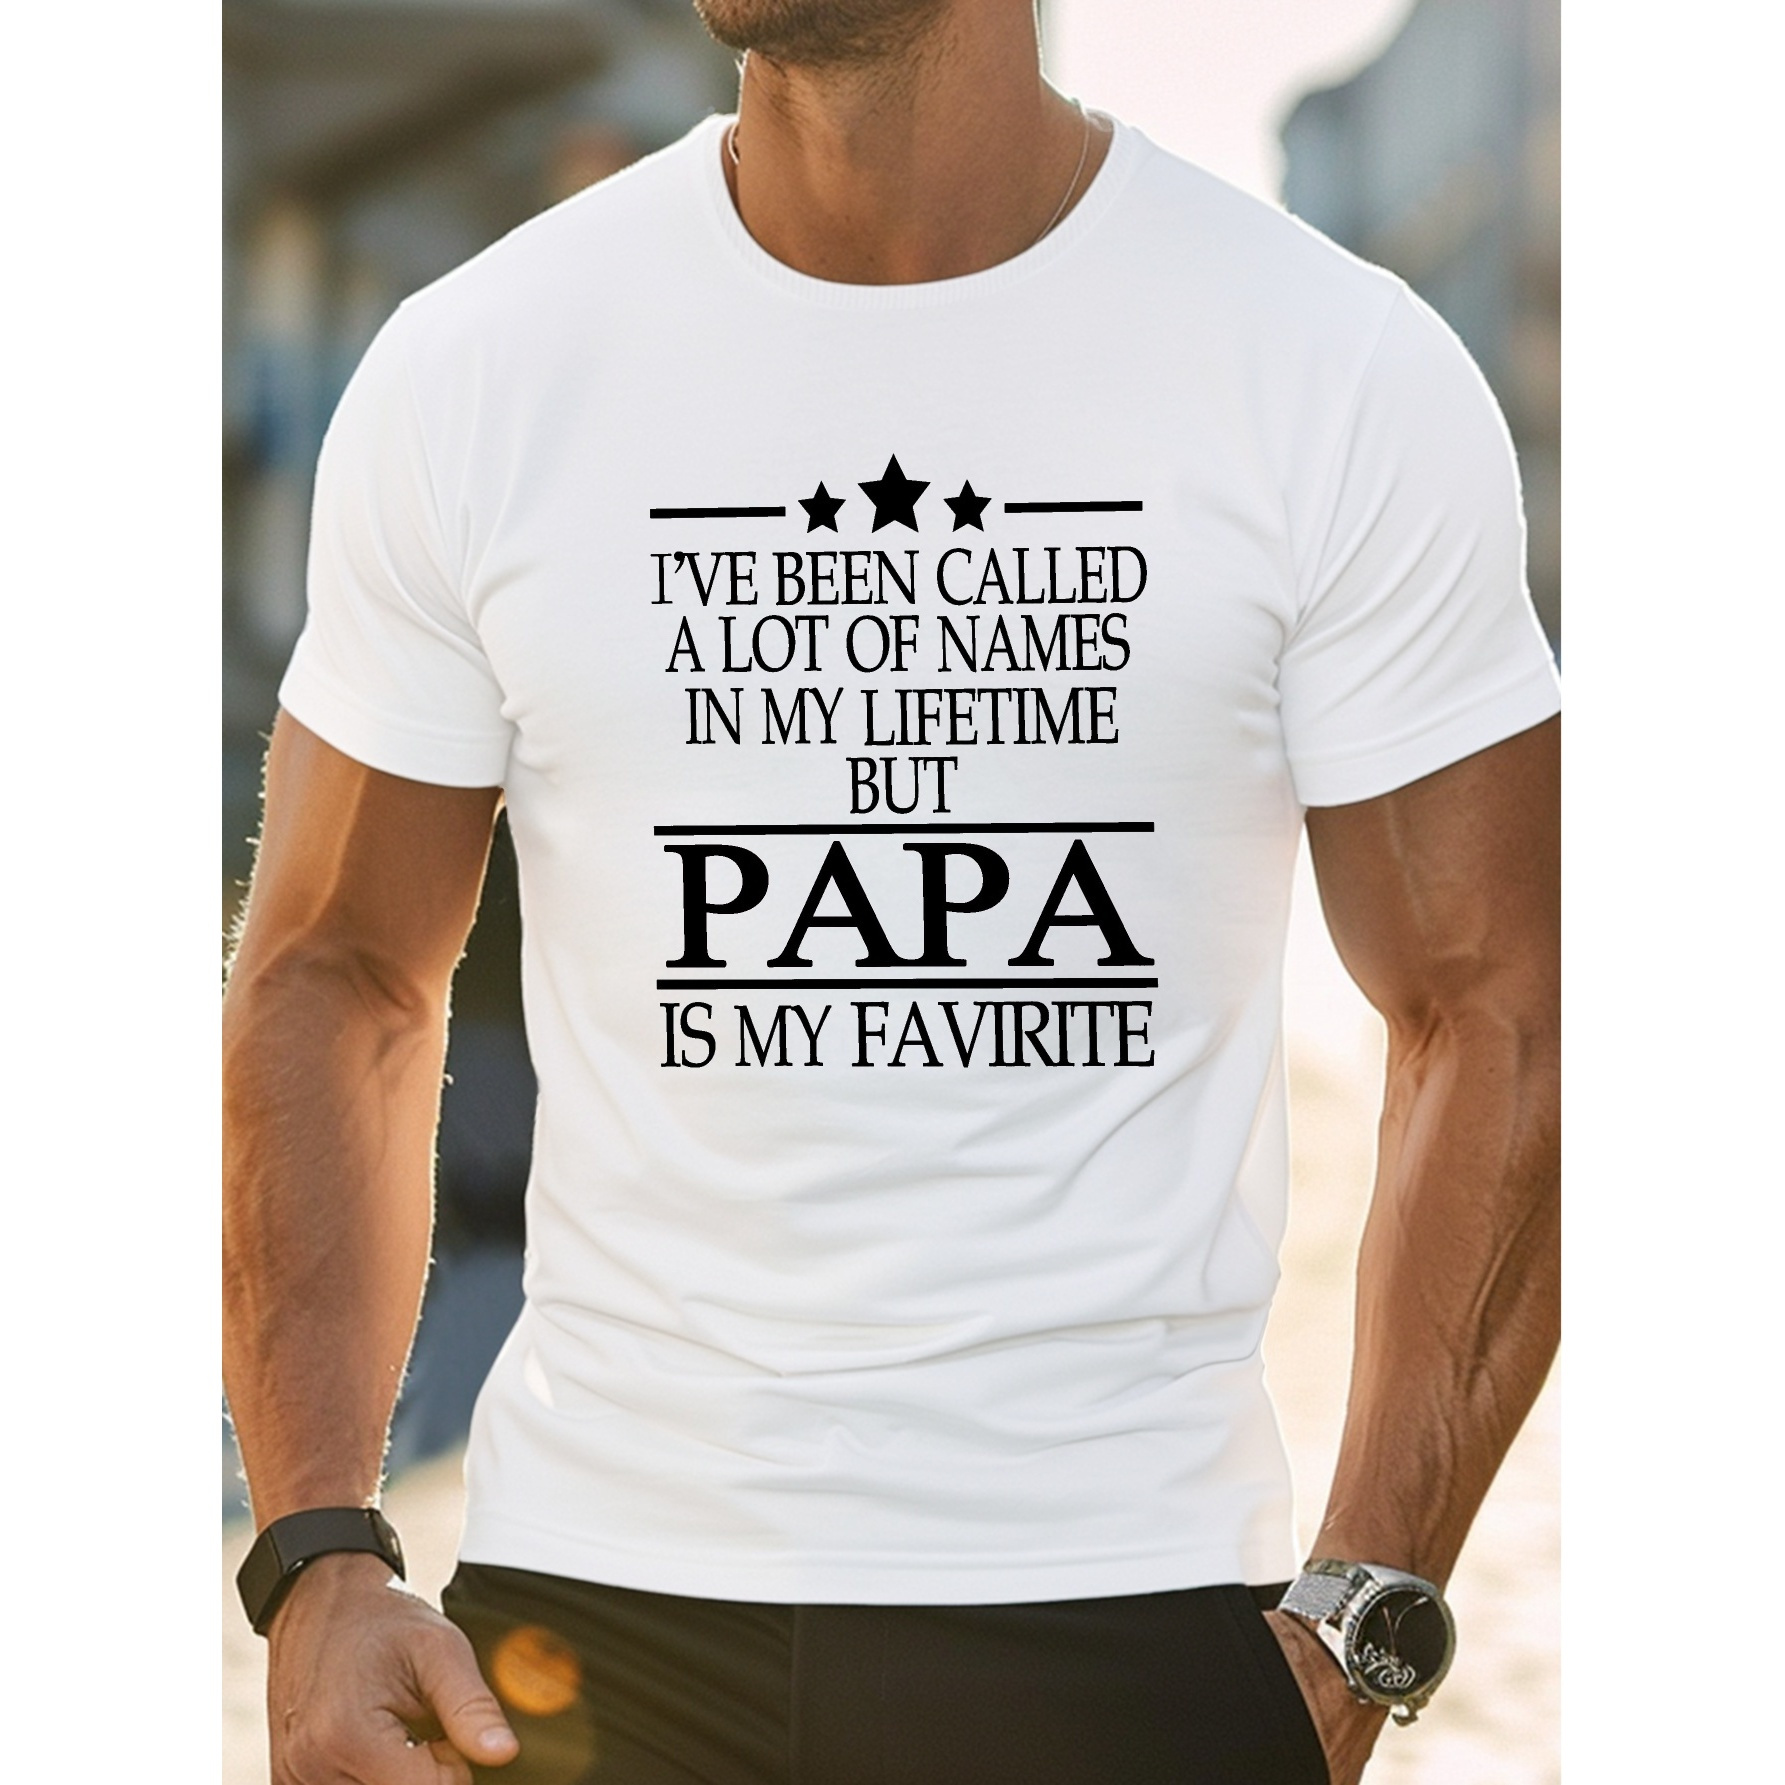 

Papa Is My Favorite Print Men's Short Sleeve T-shirts, Comfy Casual Elastic Crew Neck Tops For Men's Outdoor Activities